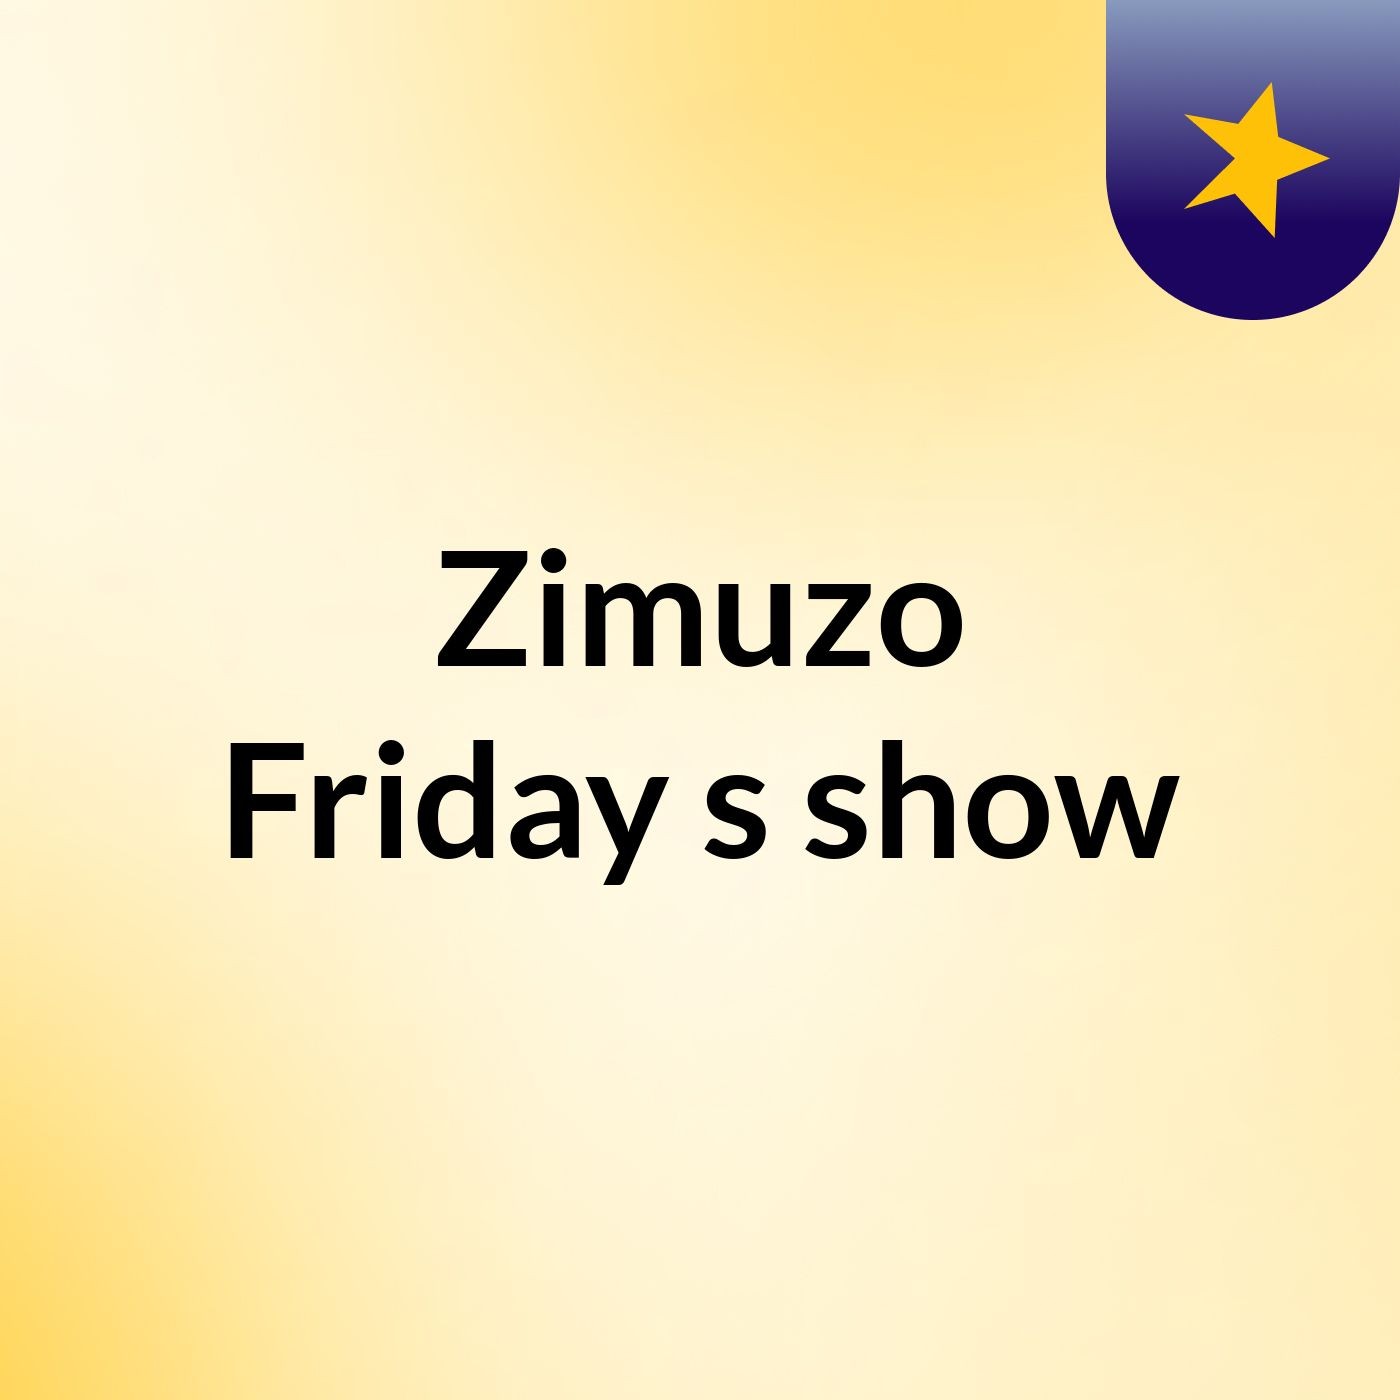 Zimuzo Friday's show